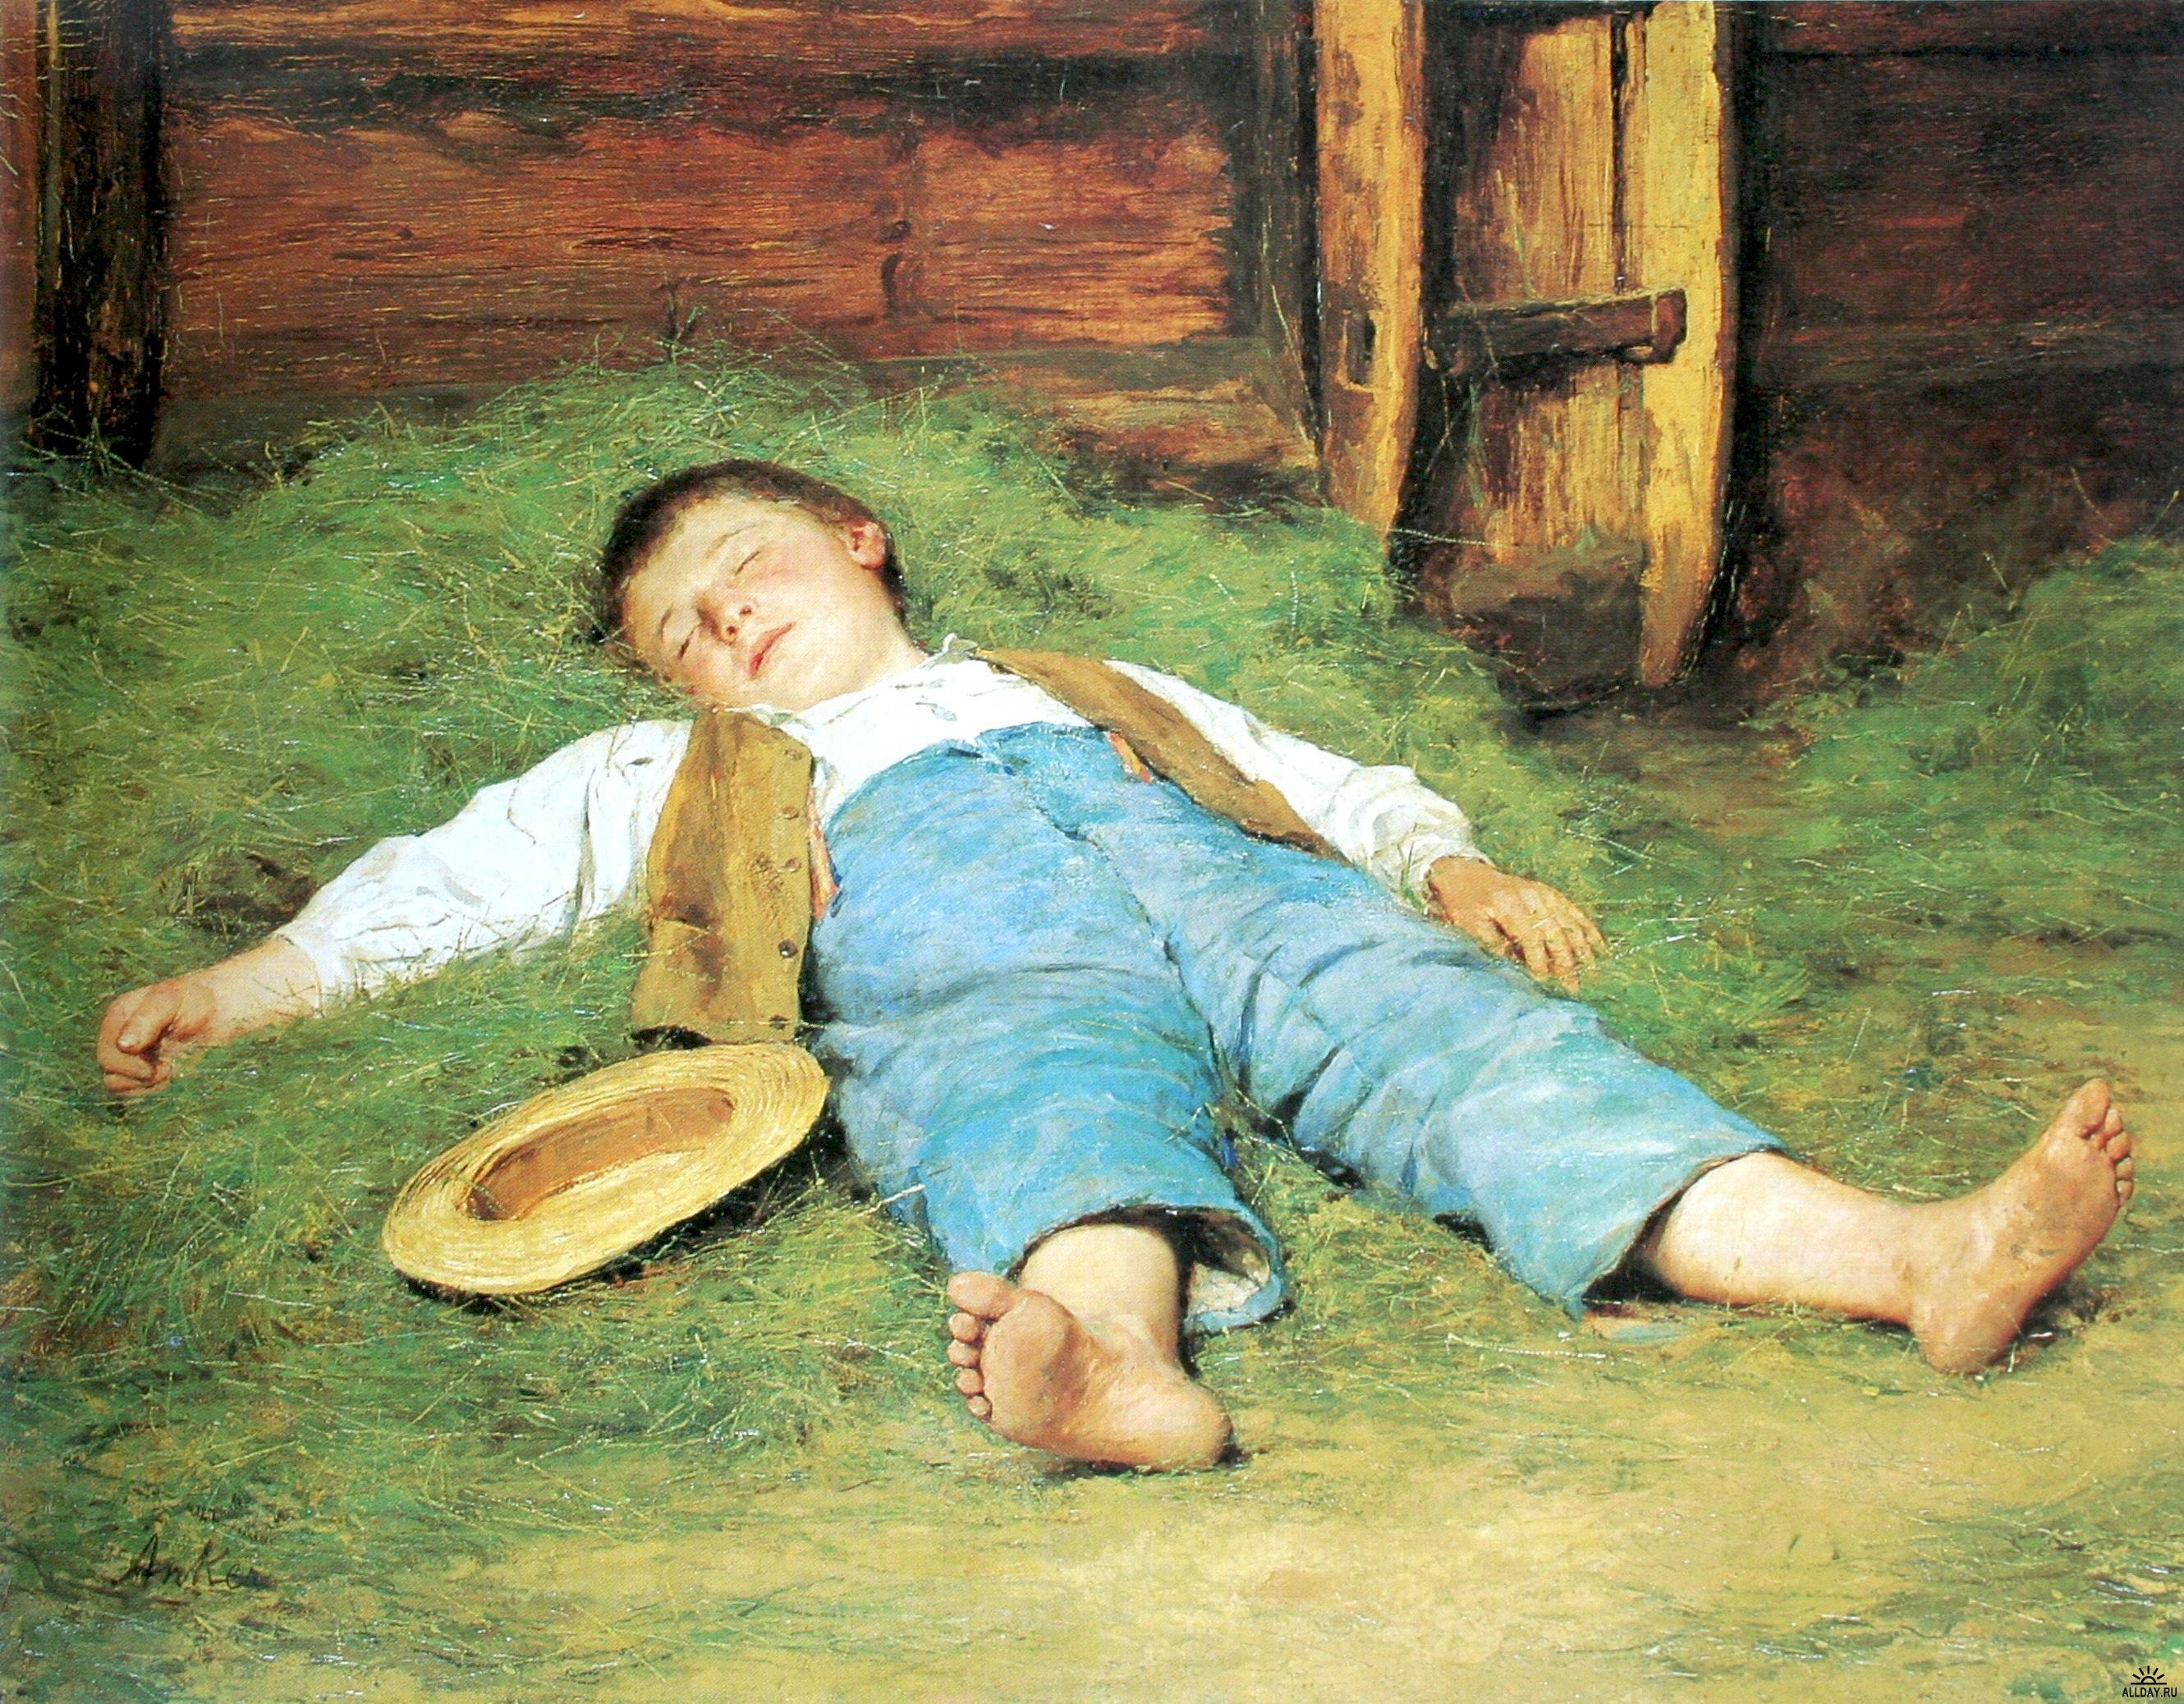 Sleeping boy in the hay by Albert Anker